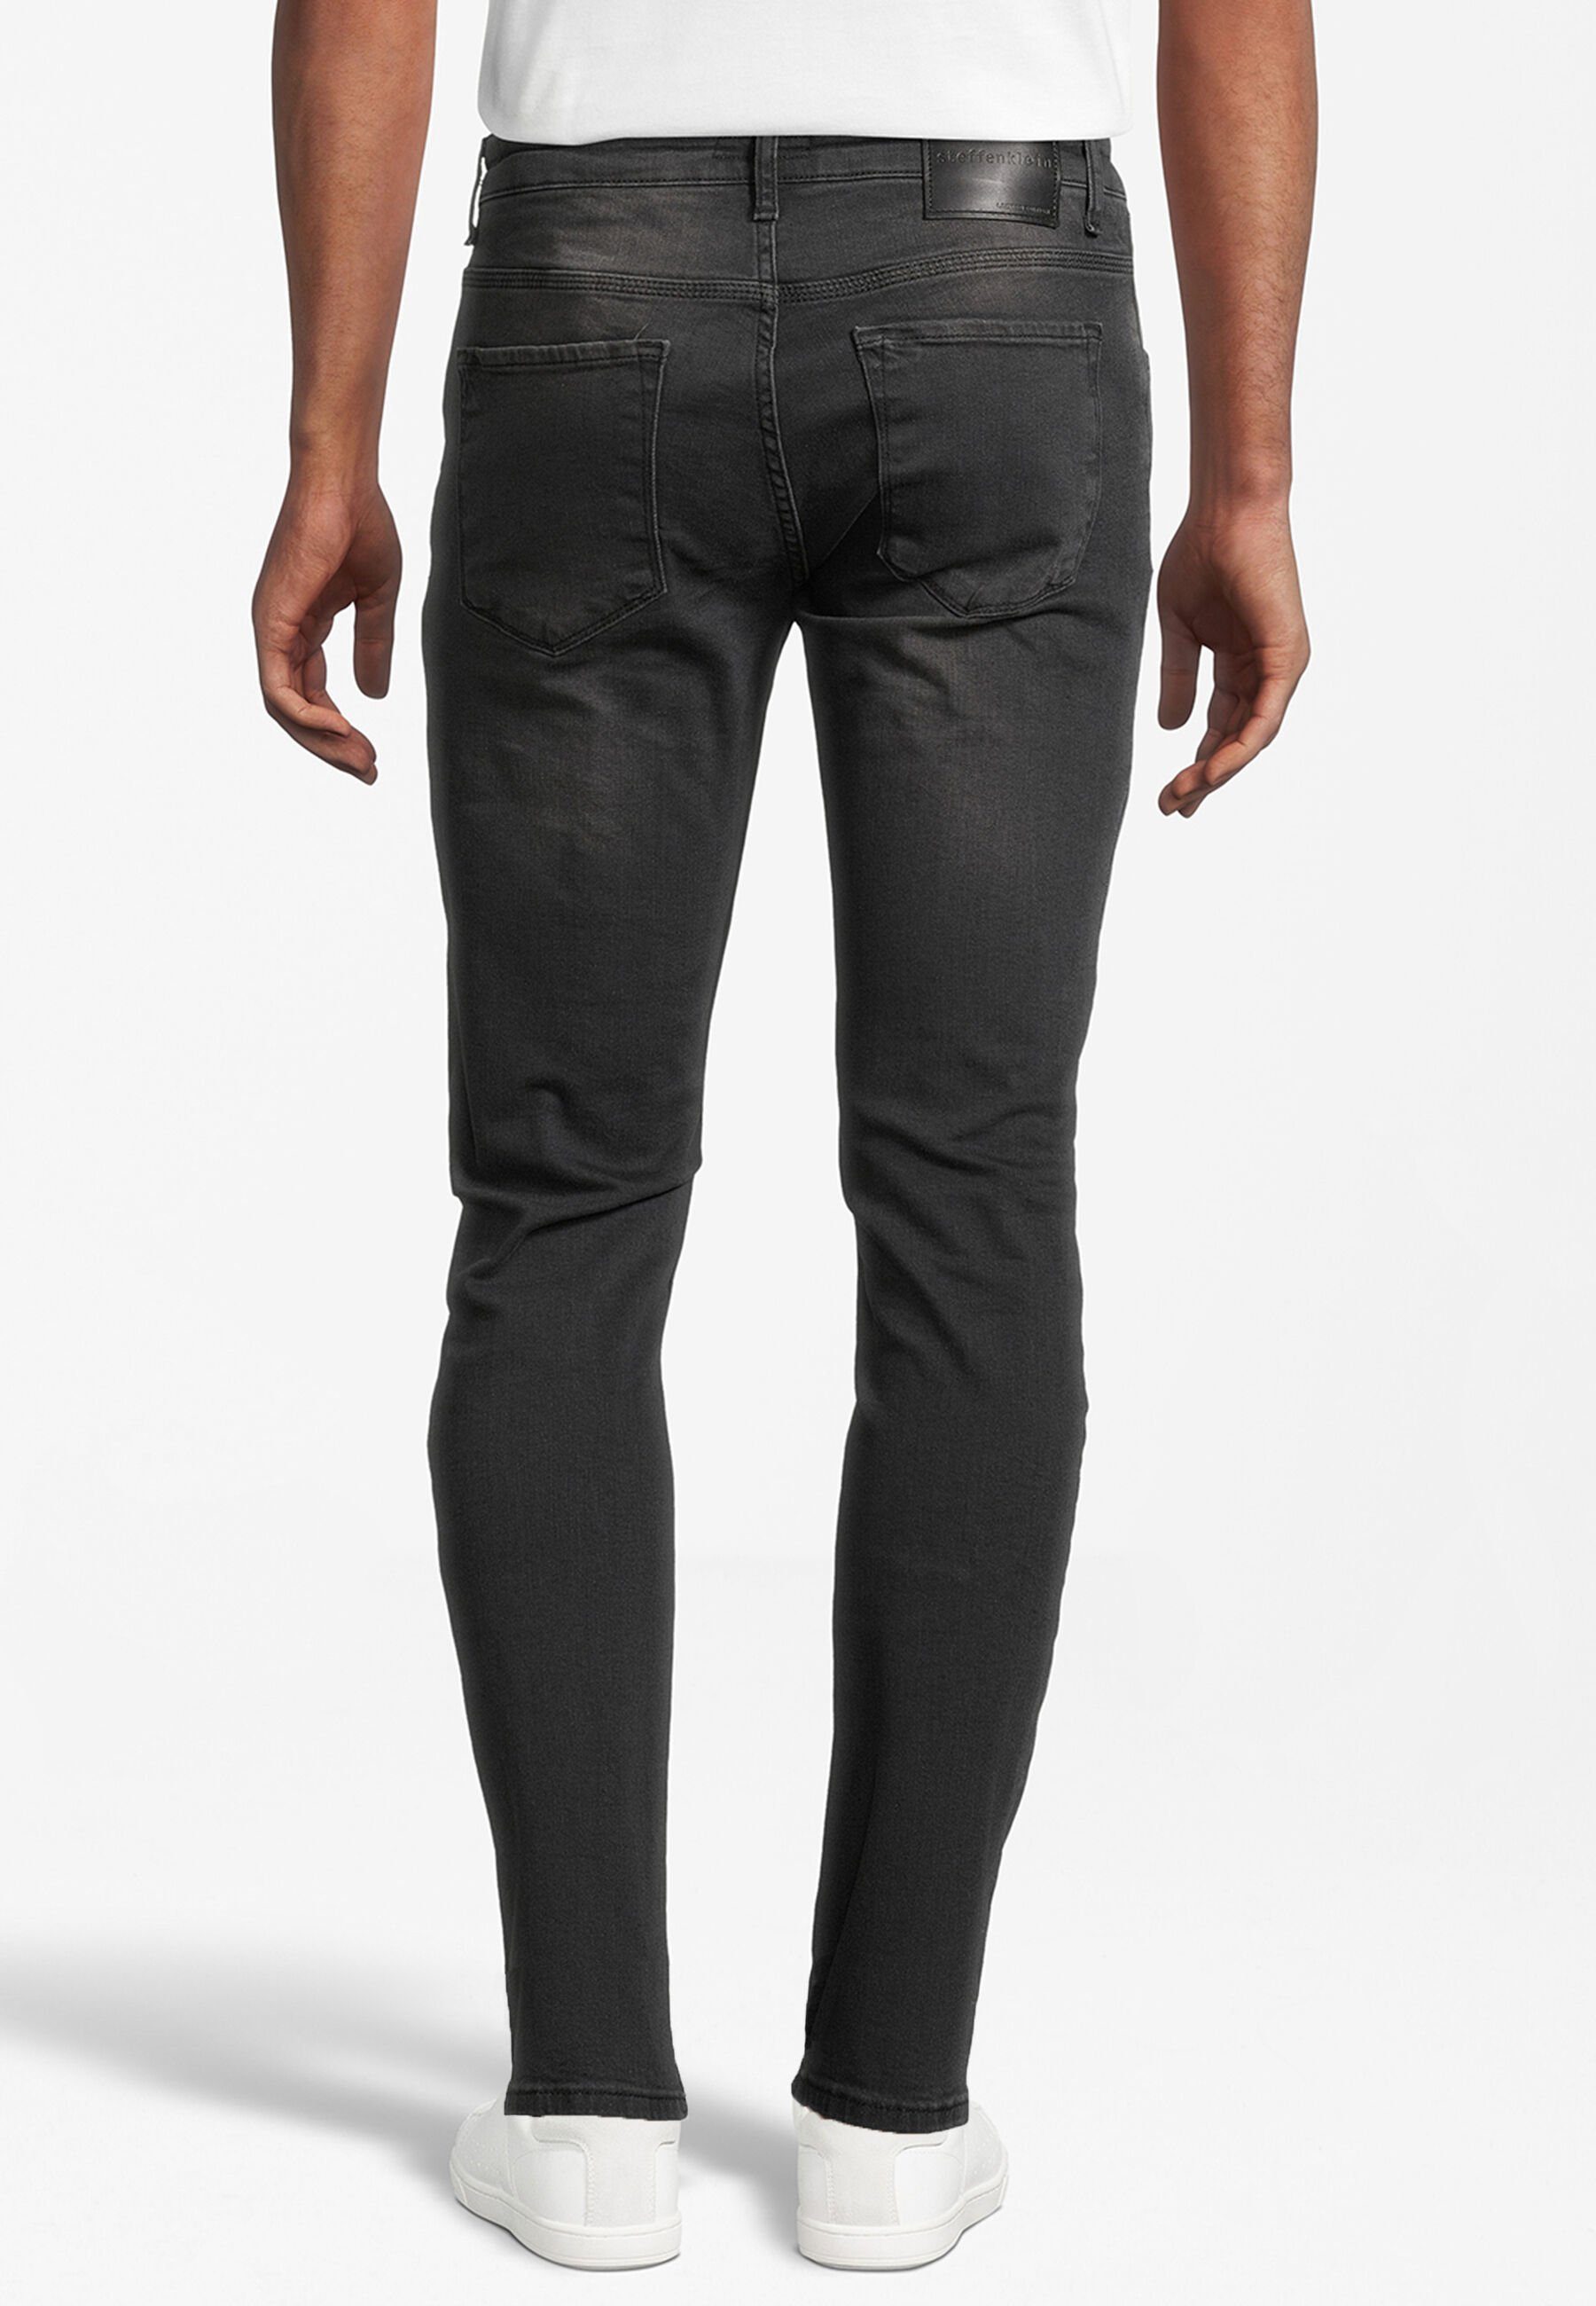 SteffenKlein Slim-fit-Jeans black denim